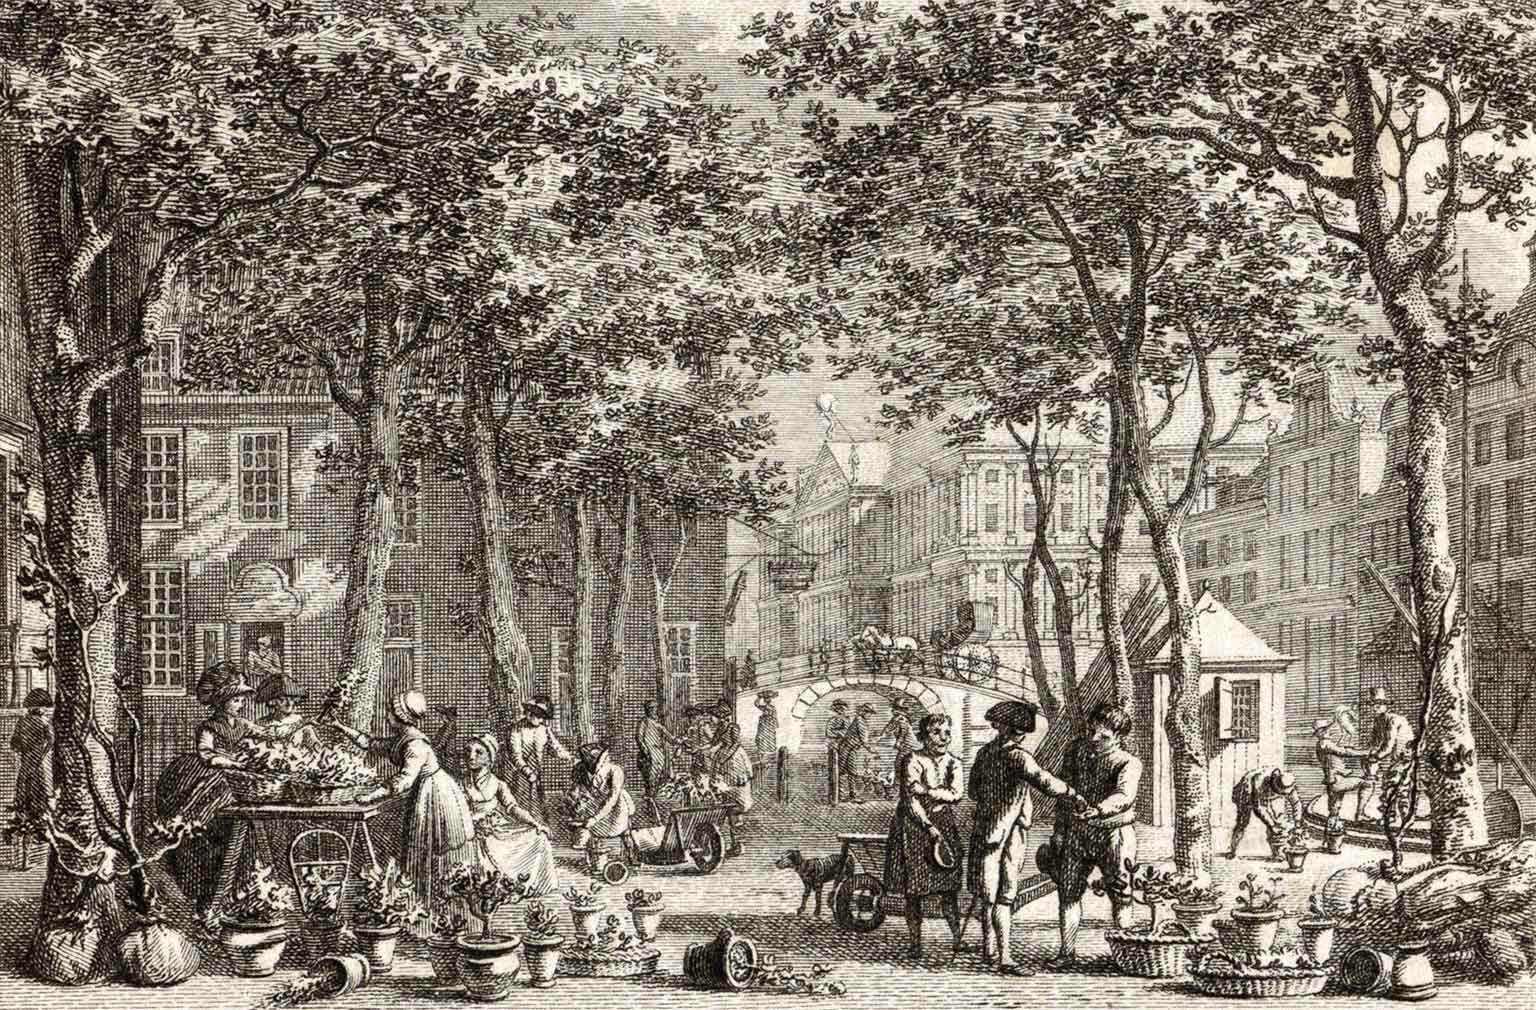 Etching of Bloemmarkt at Nieuwezijds Voorburgwal, Amsterdam, around 1800